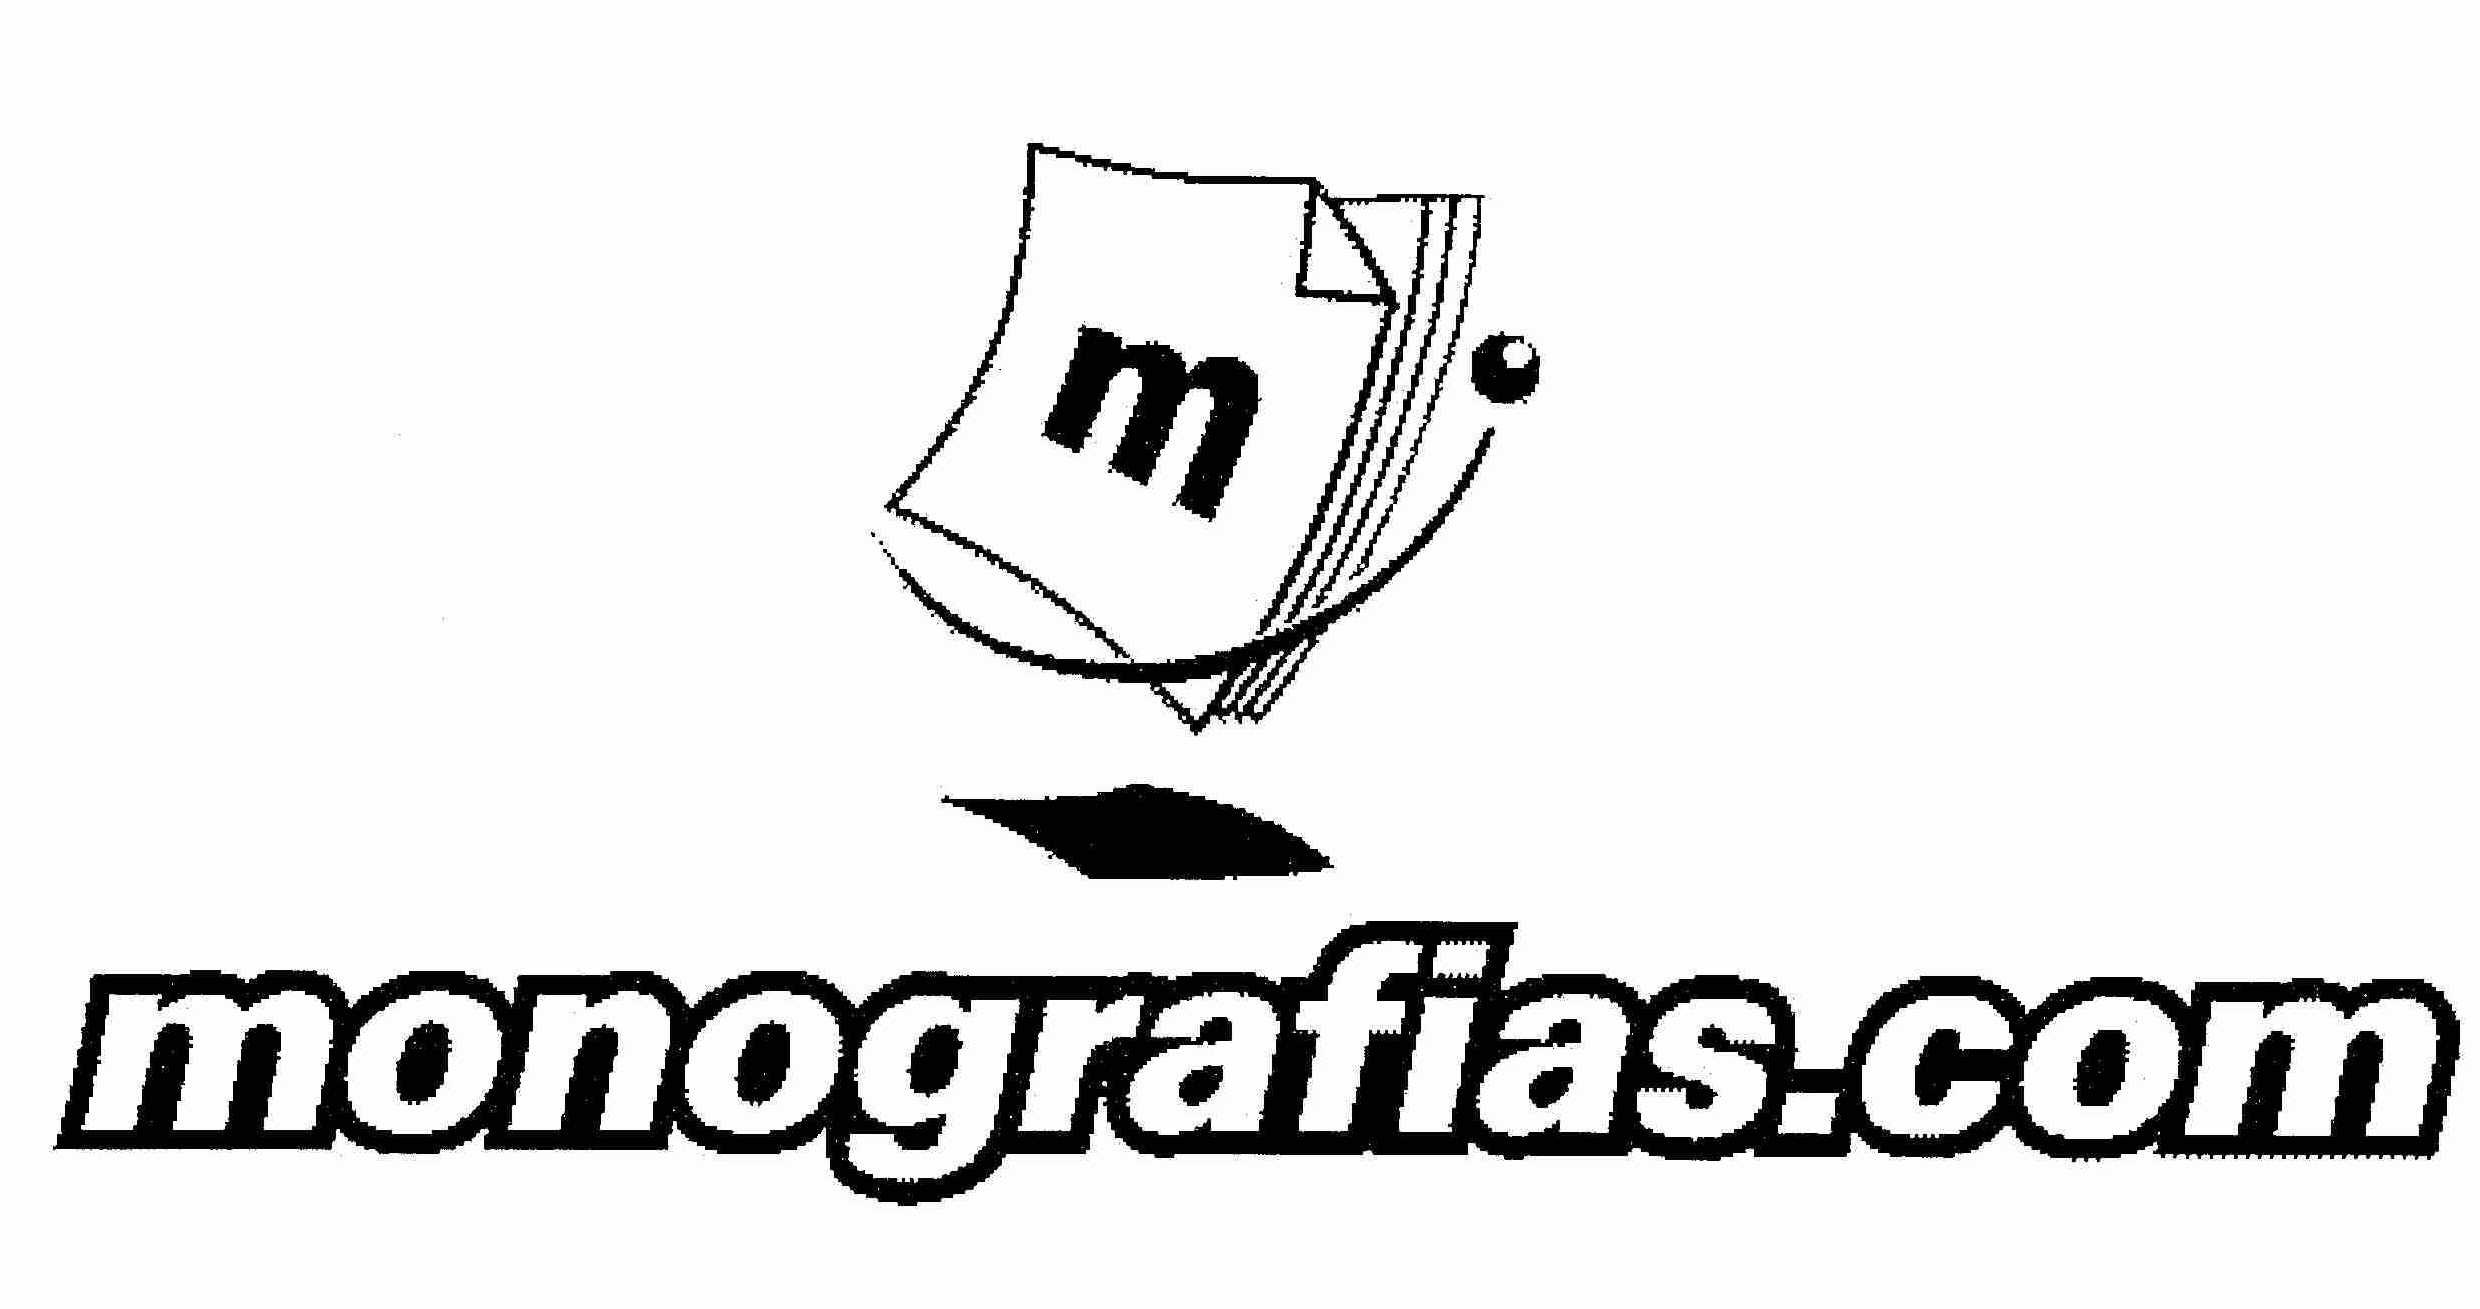  MONOGRAFIAS.COM